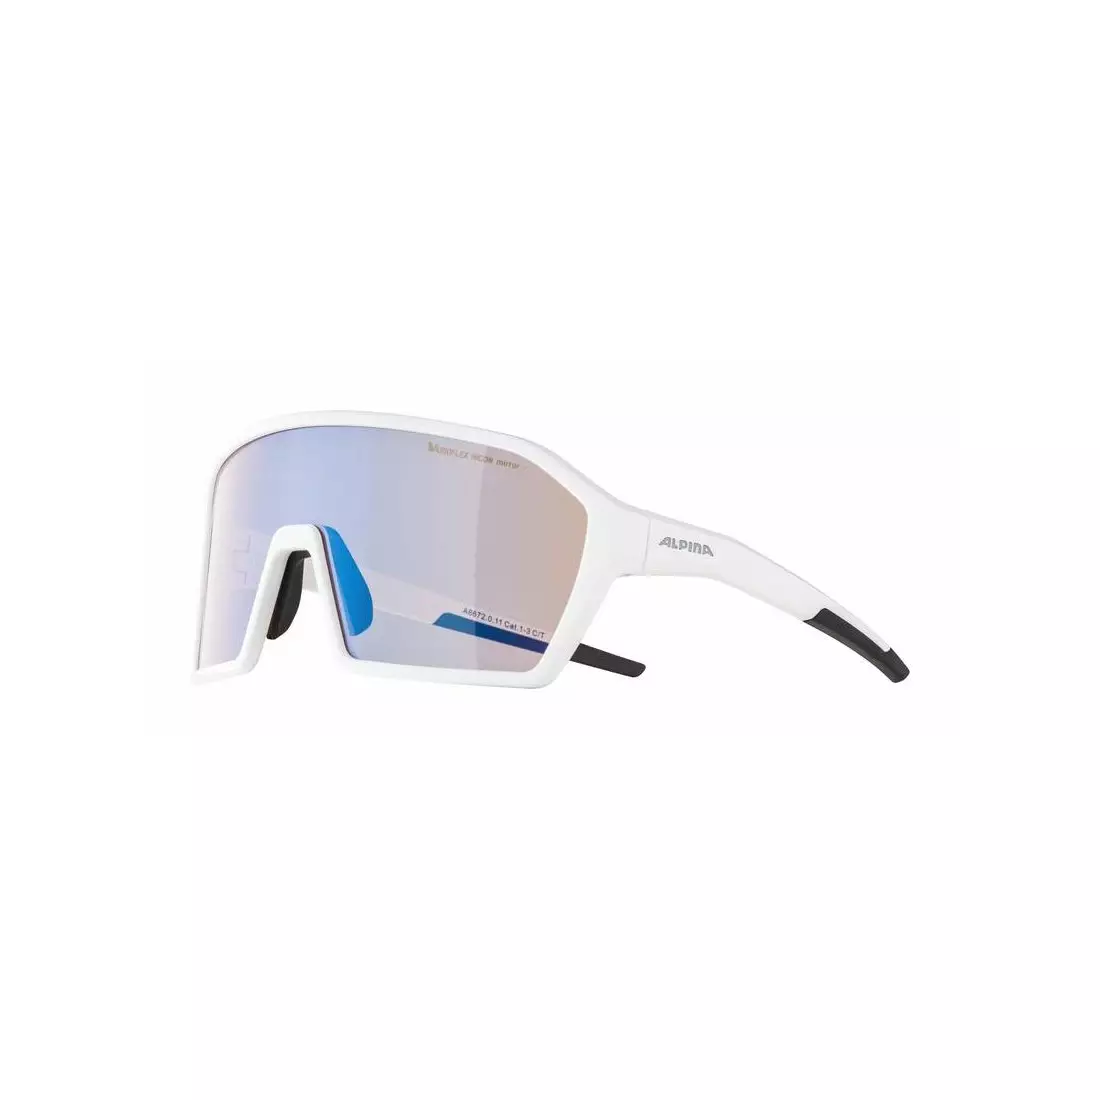 ALPINA Sportbrille RAM HVLM+ BLUE MIRROR S1-3 white matt A8672011